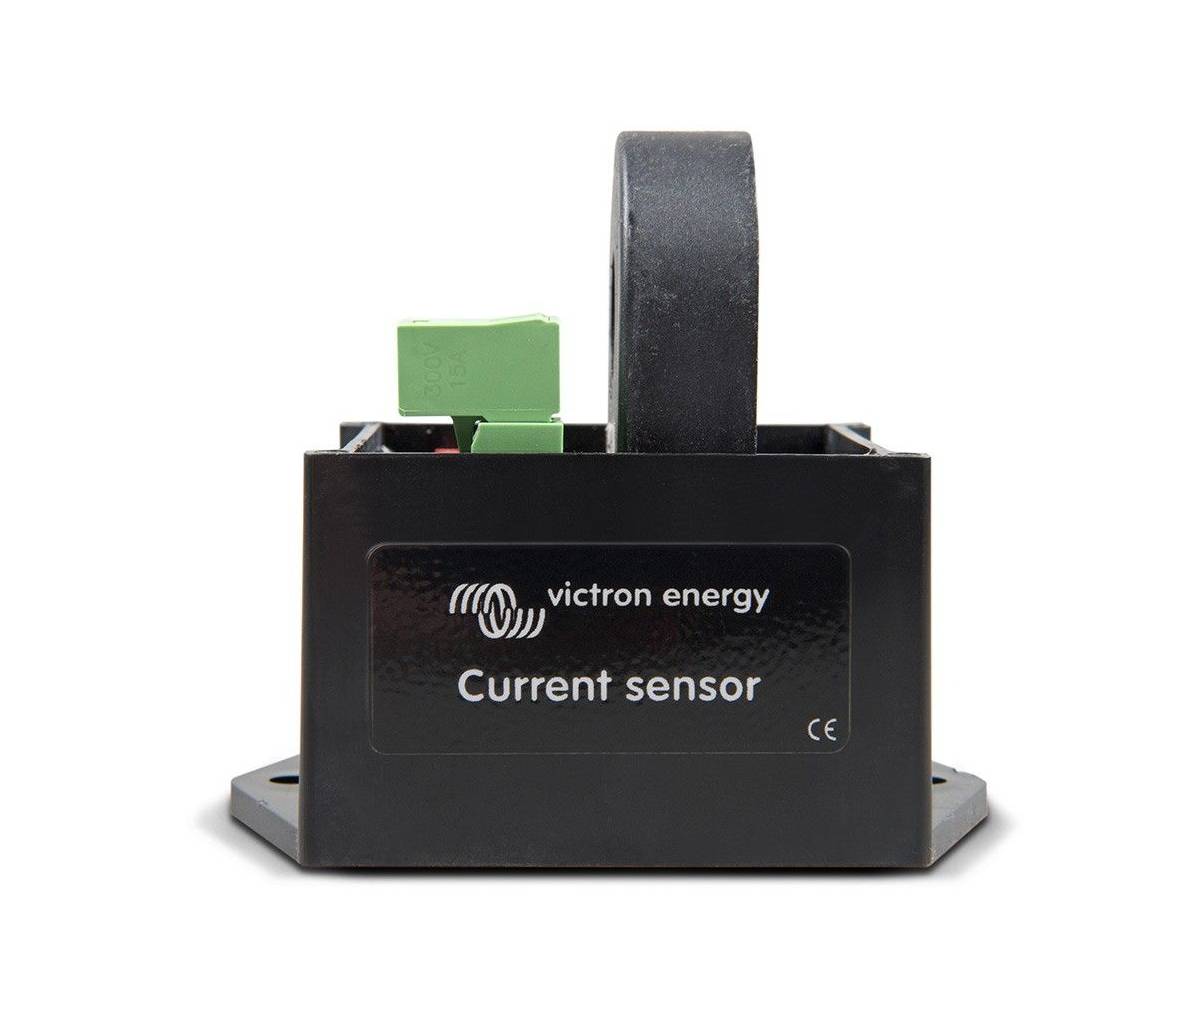 Sensor de corriente alterna - monofásica - Victron